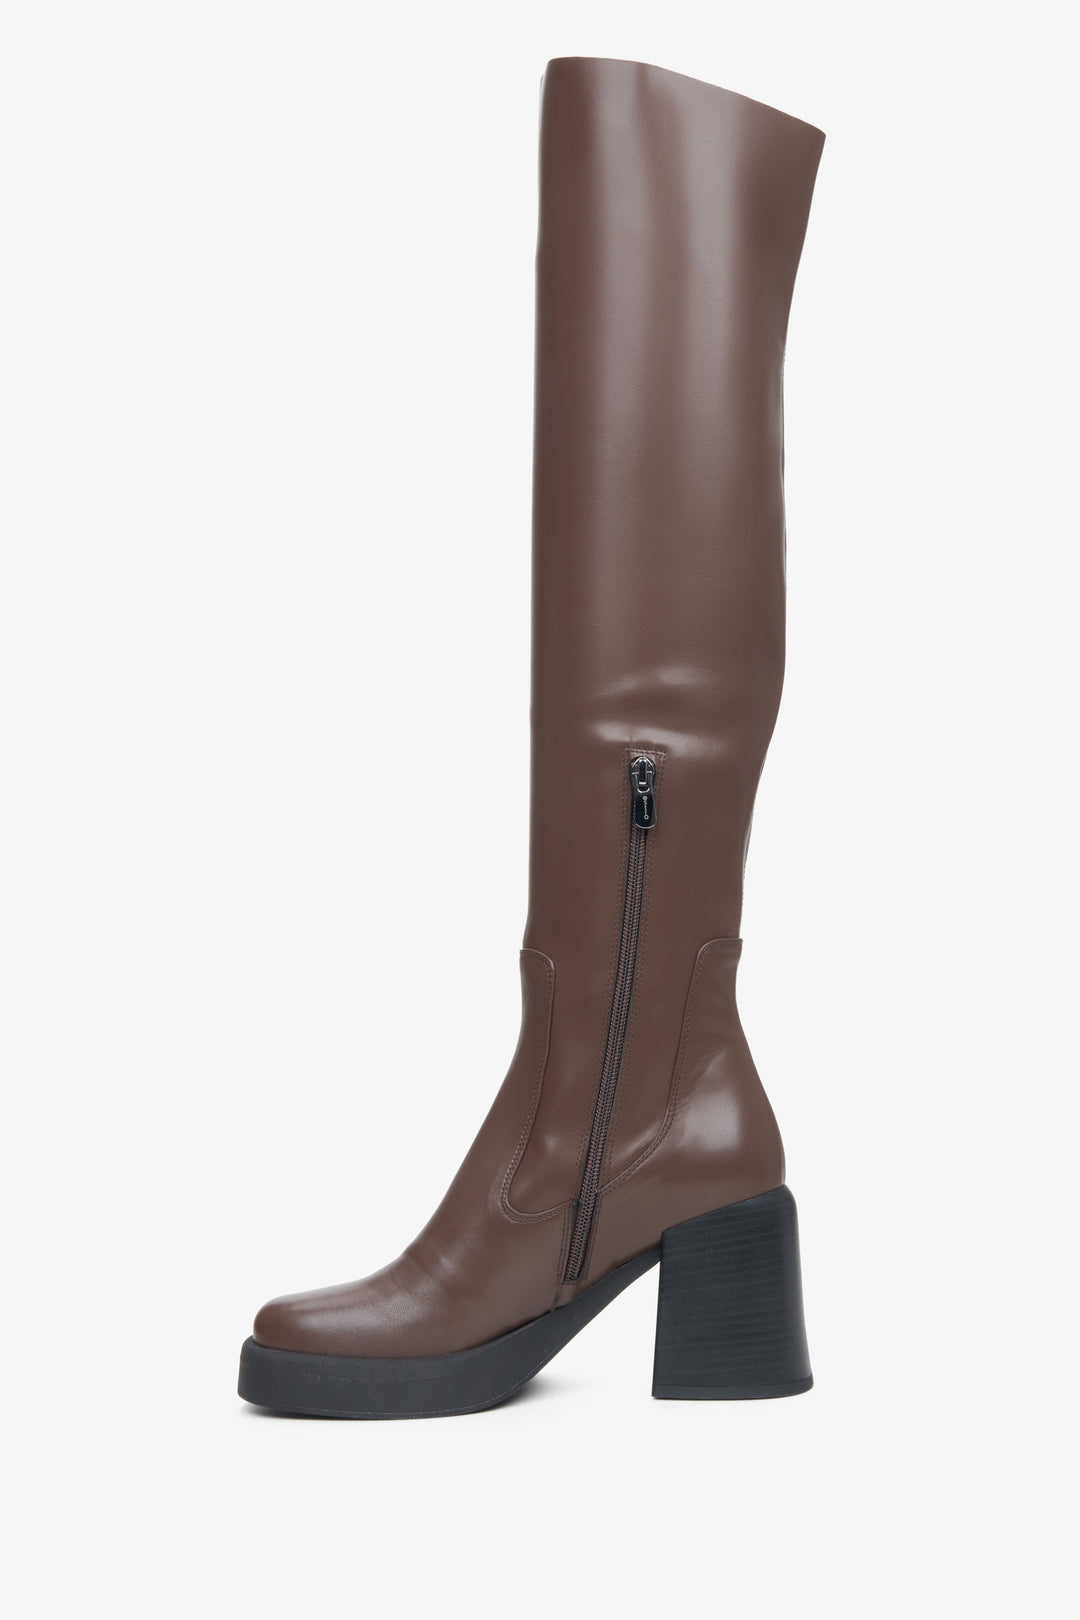 Damskie, ciemnobrązowe kozaki Estro z elastyczną cholewą nad kolano - profil buta.